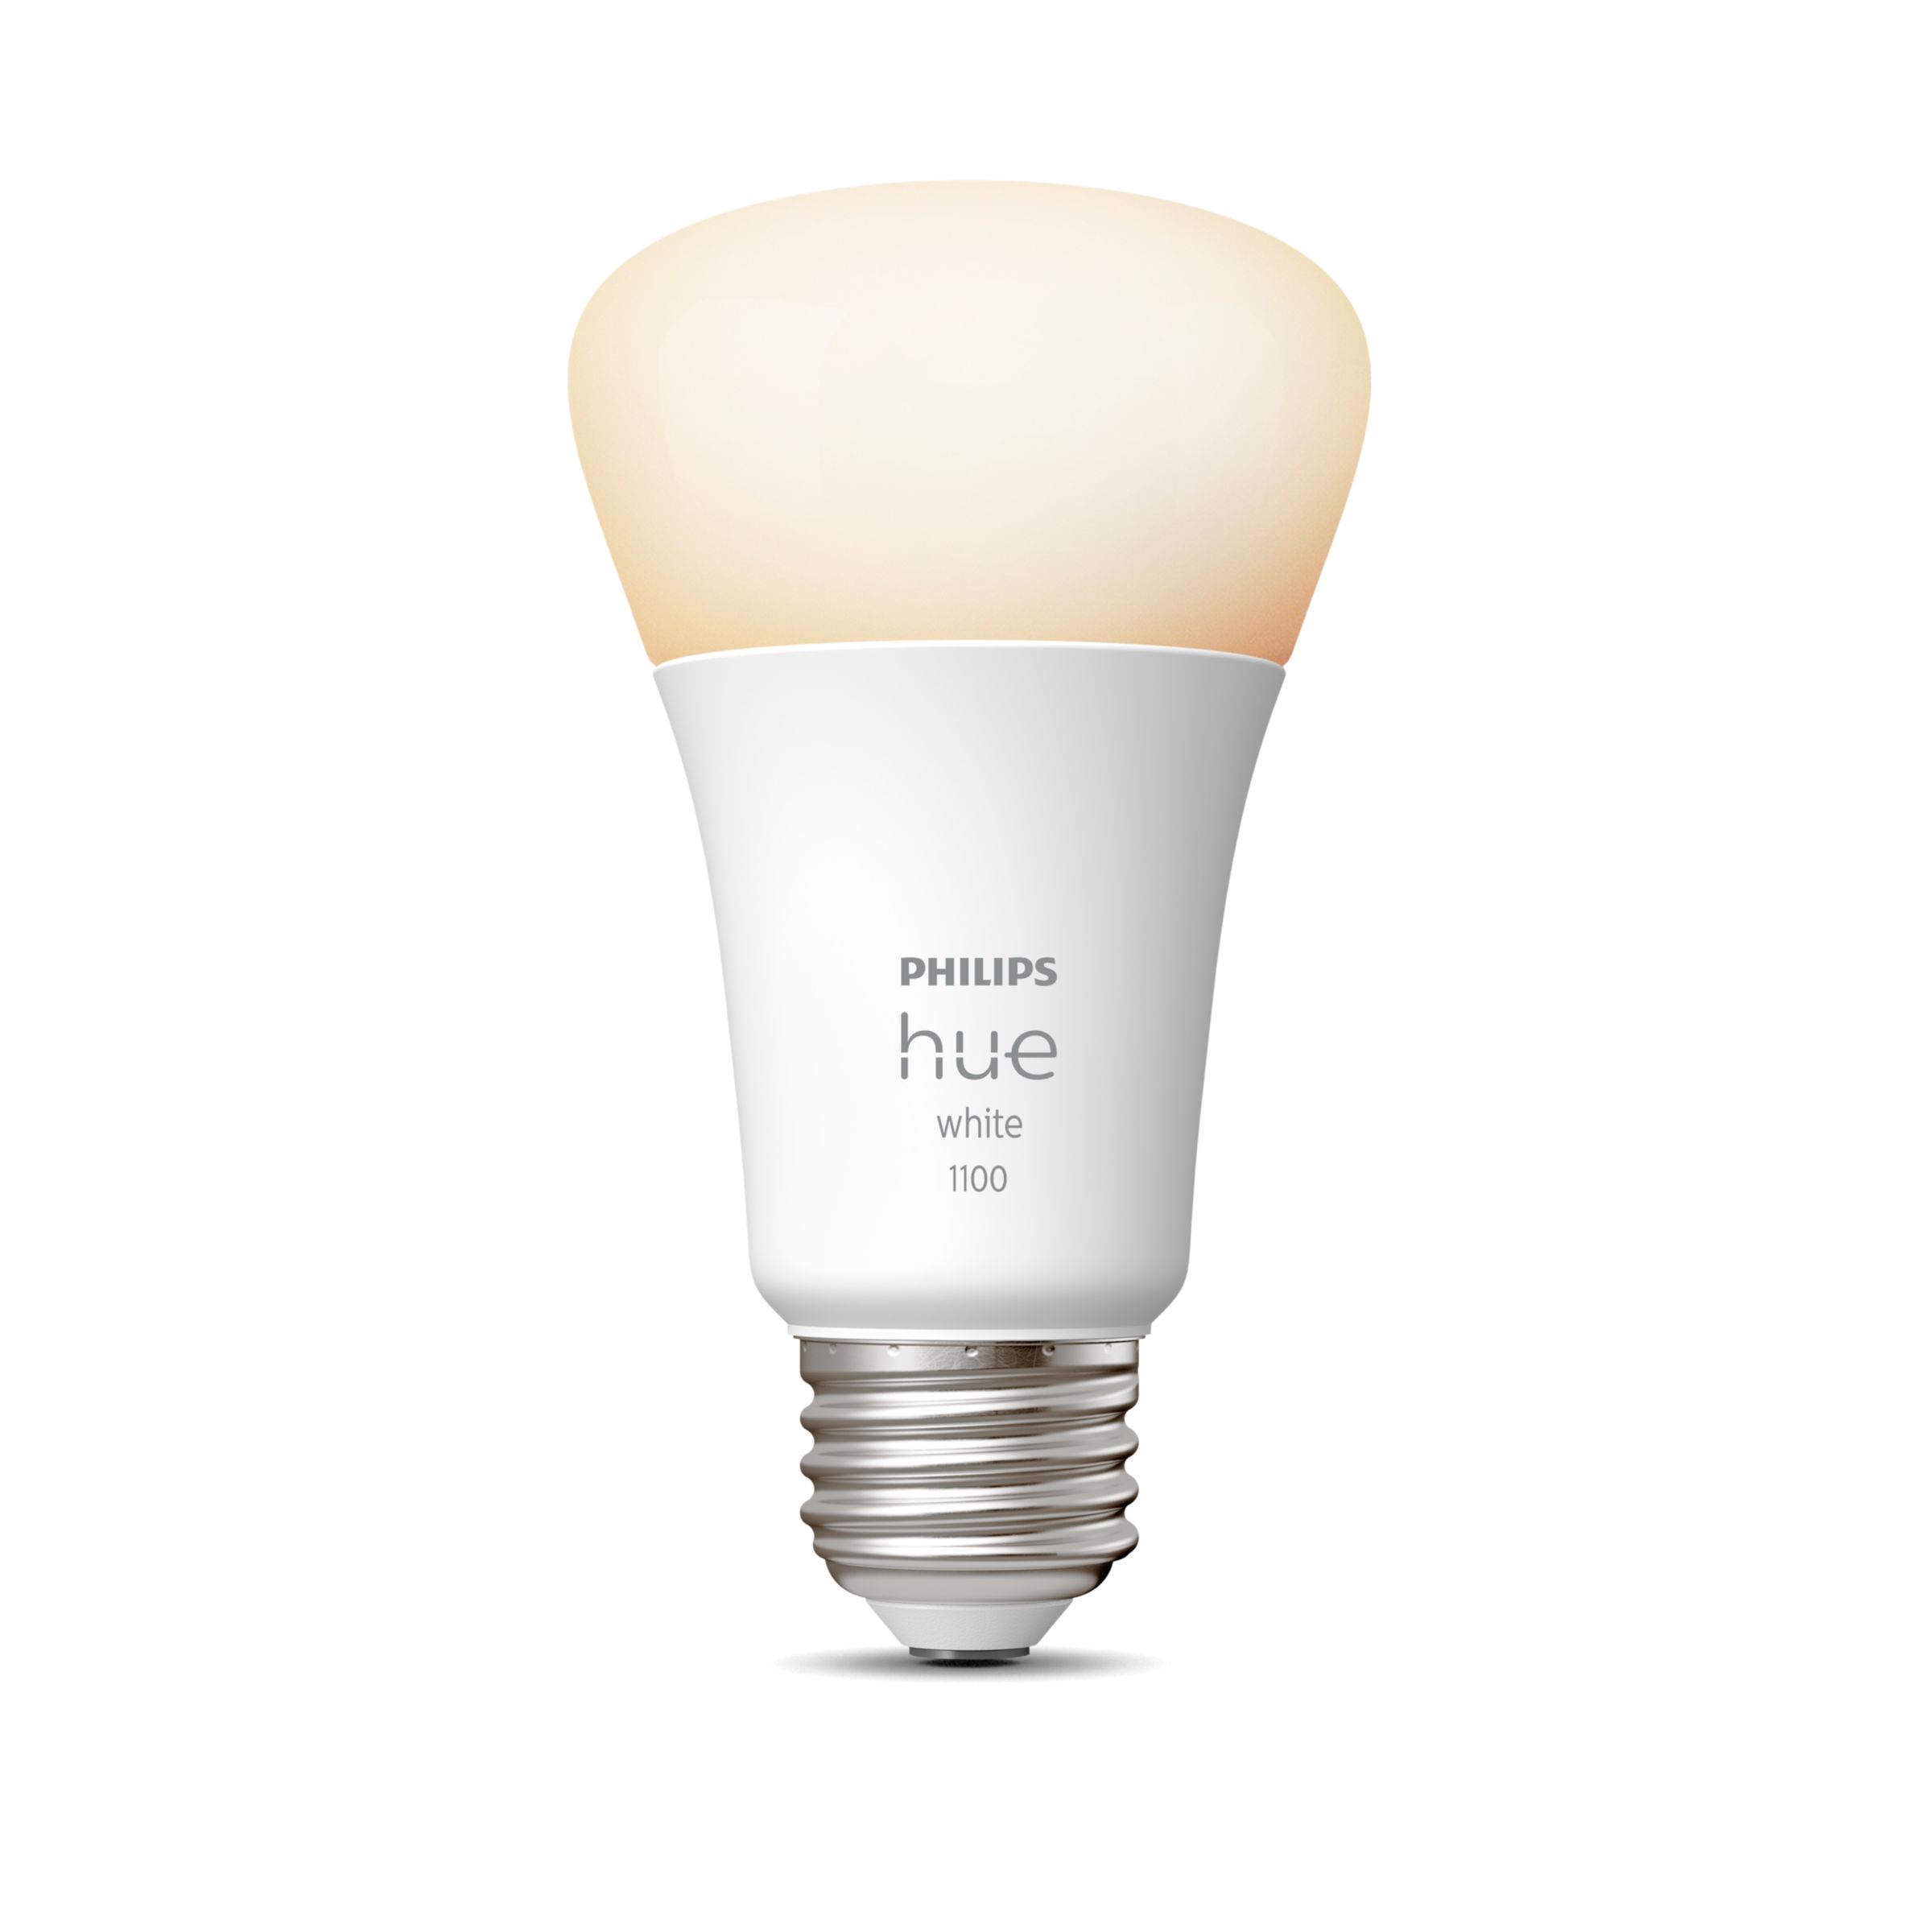 Phillips hue white E26 - 蛍光灯・電球